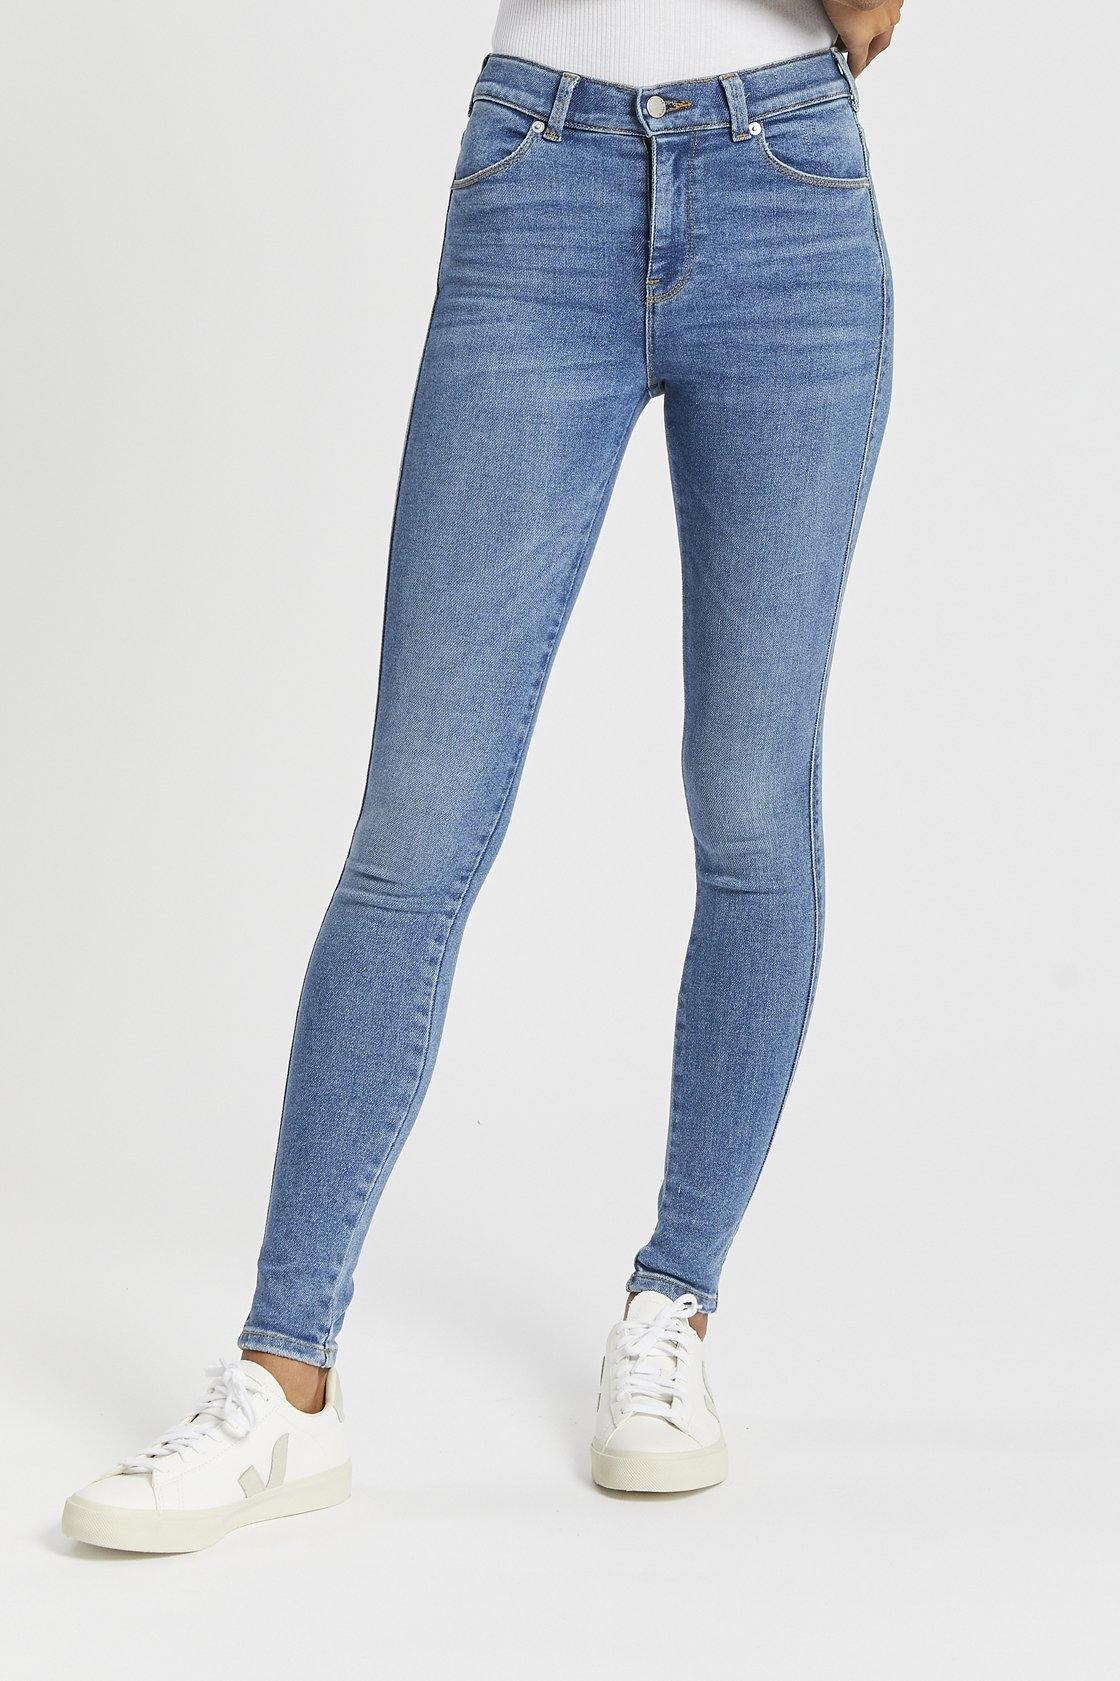 Dr Denim Australia | Lexy Skinny Jeans Westcoast Sky Blue Denim Jeans Australia & NZ